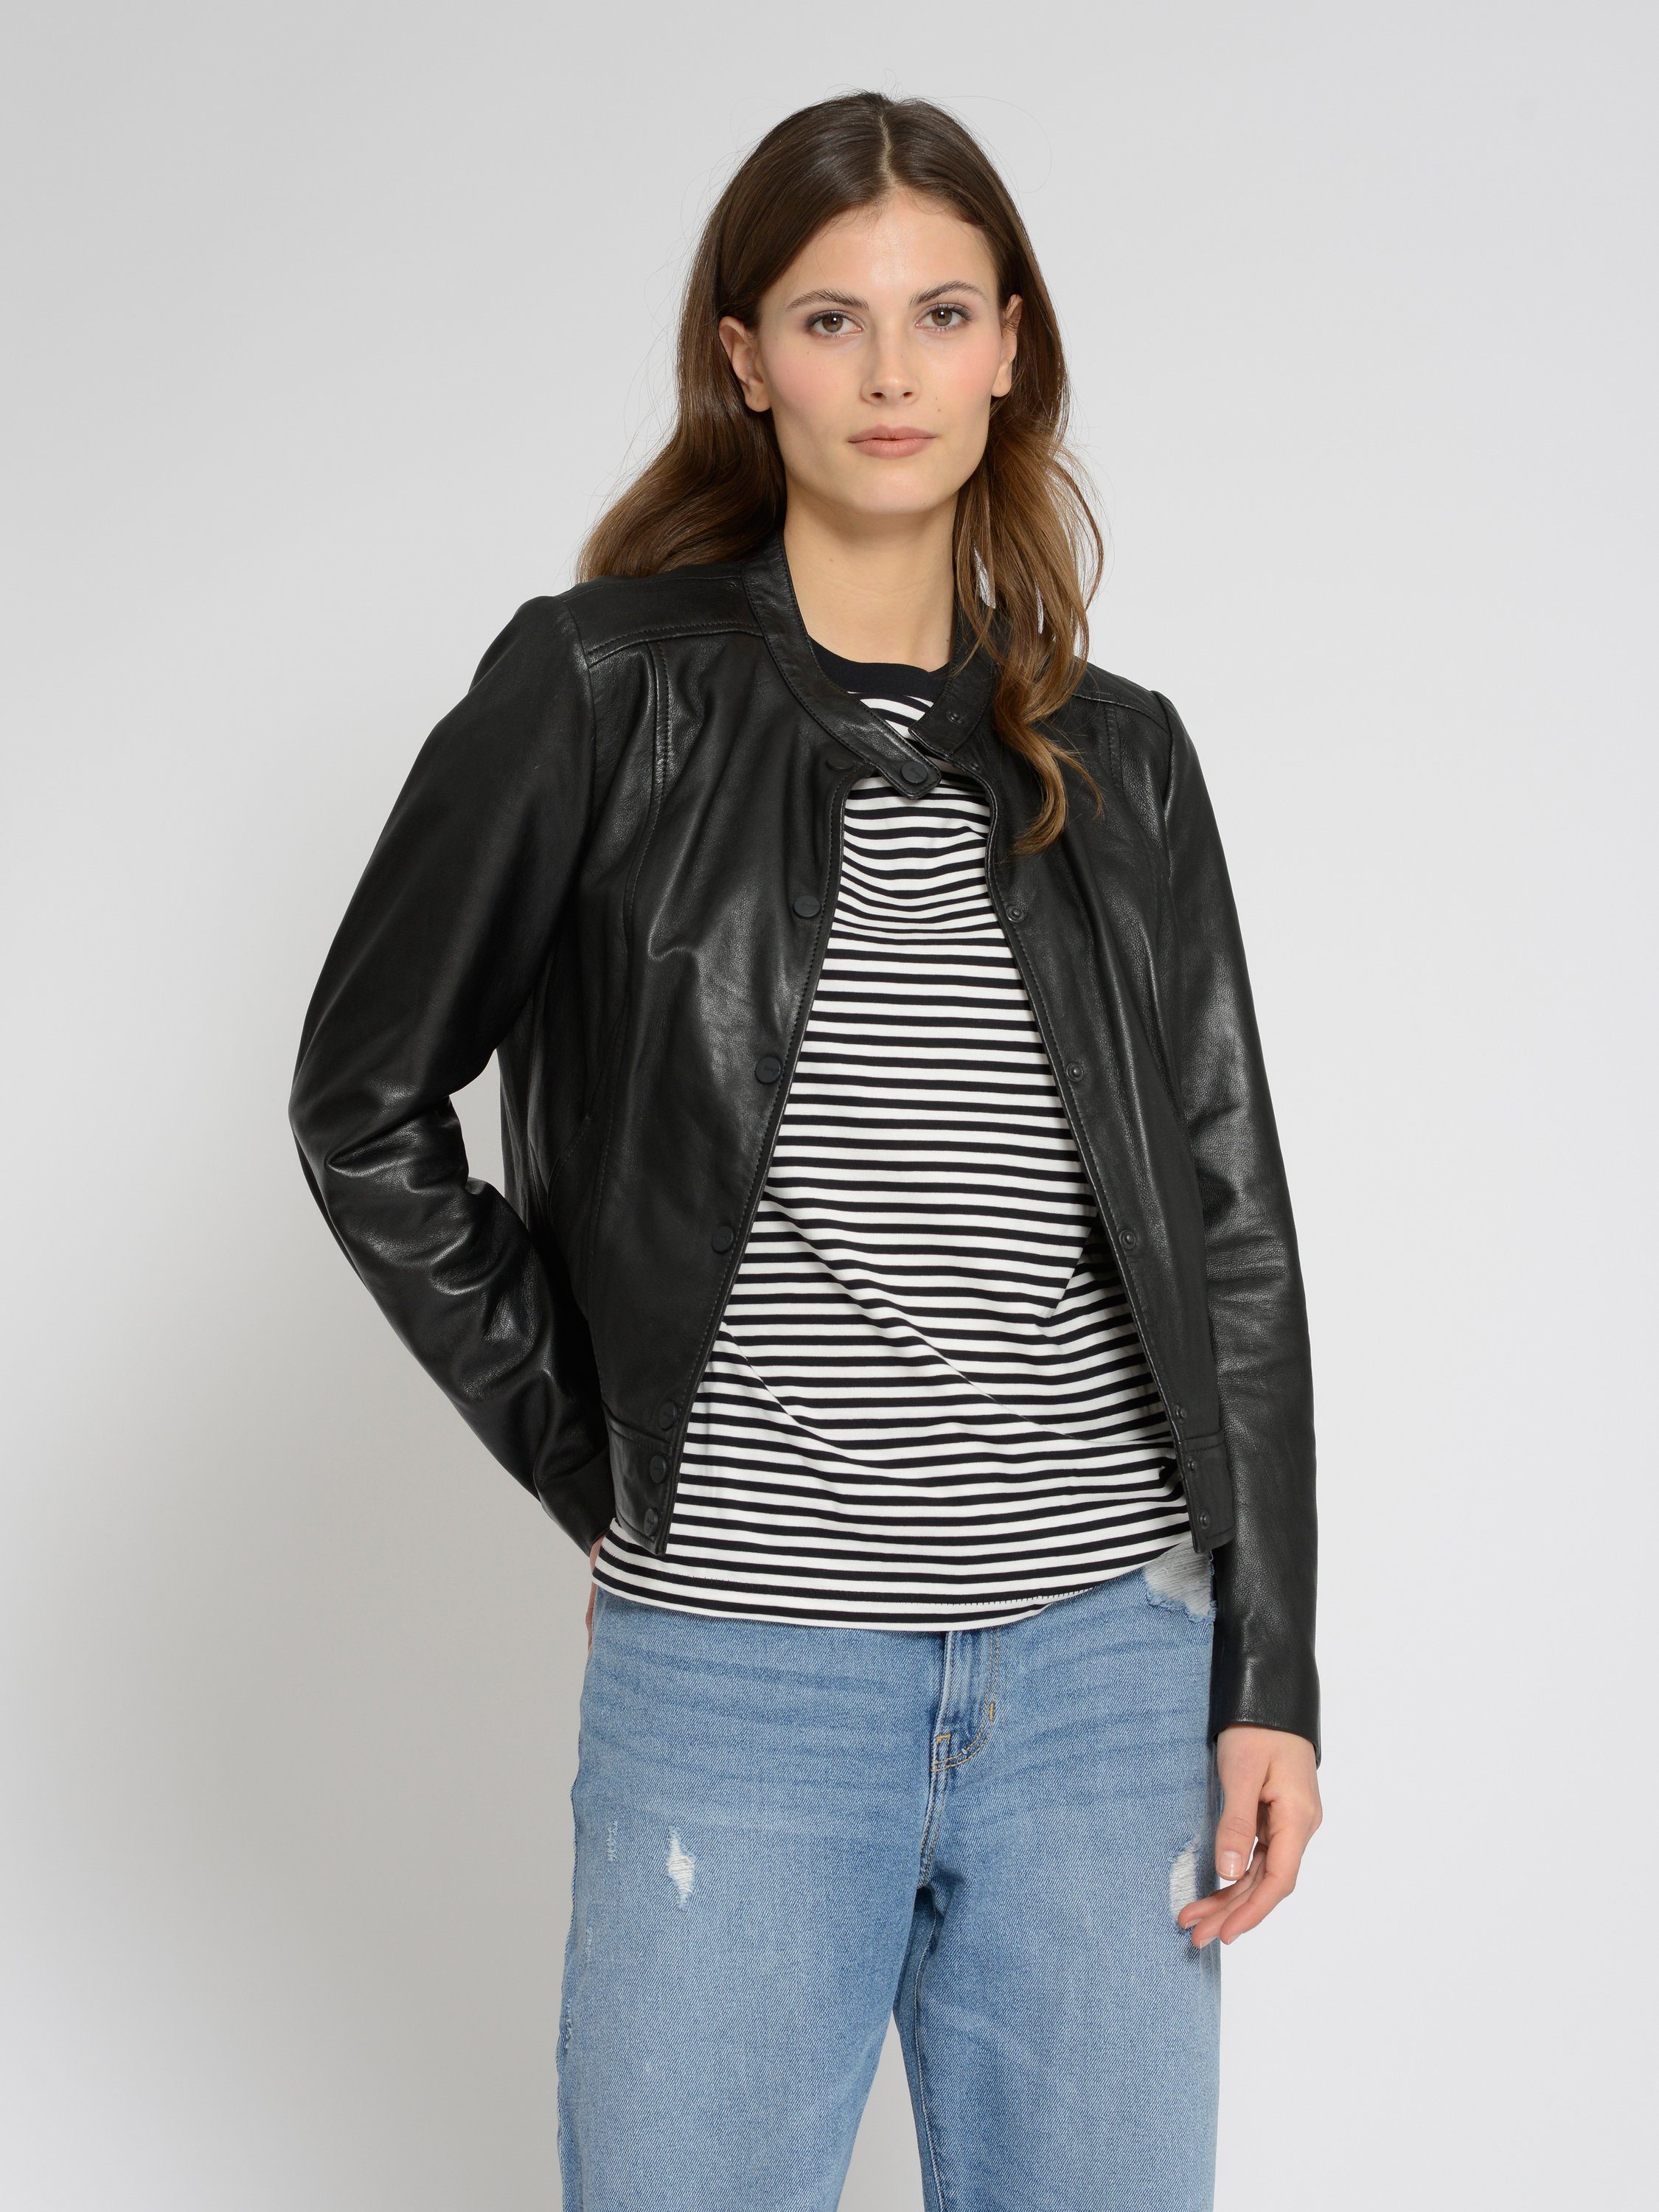 Jacken online für Damen | OTTO Maze kaufen